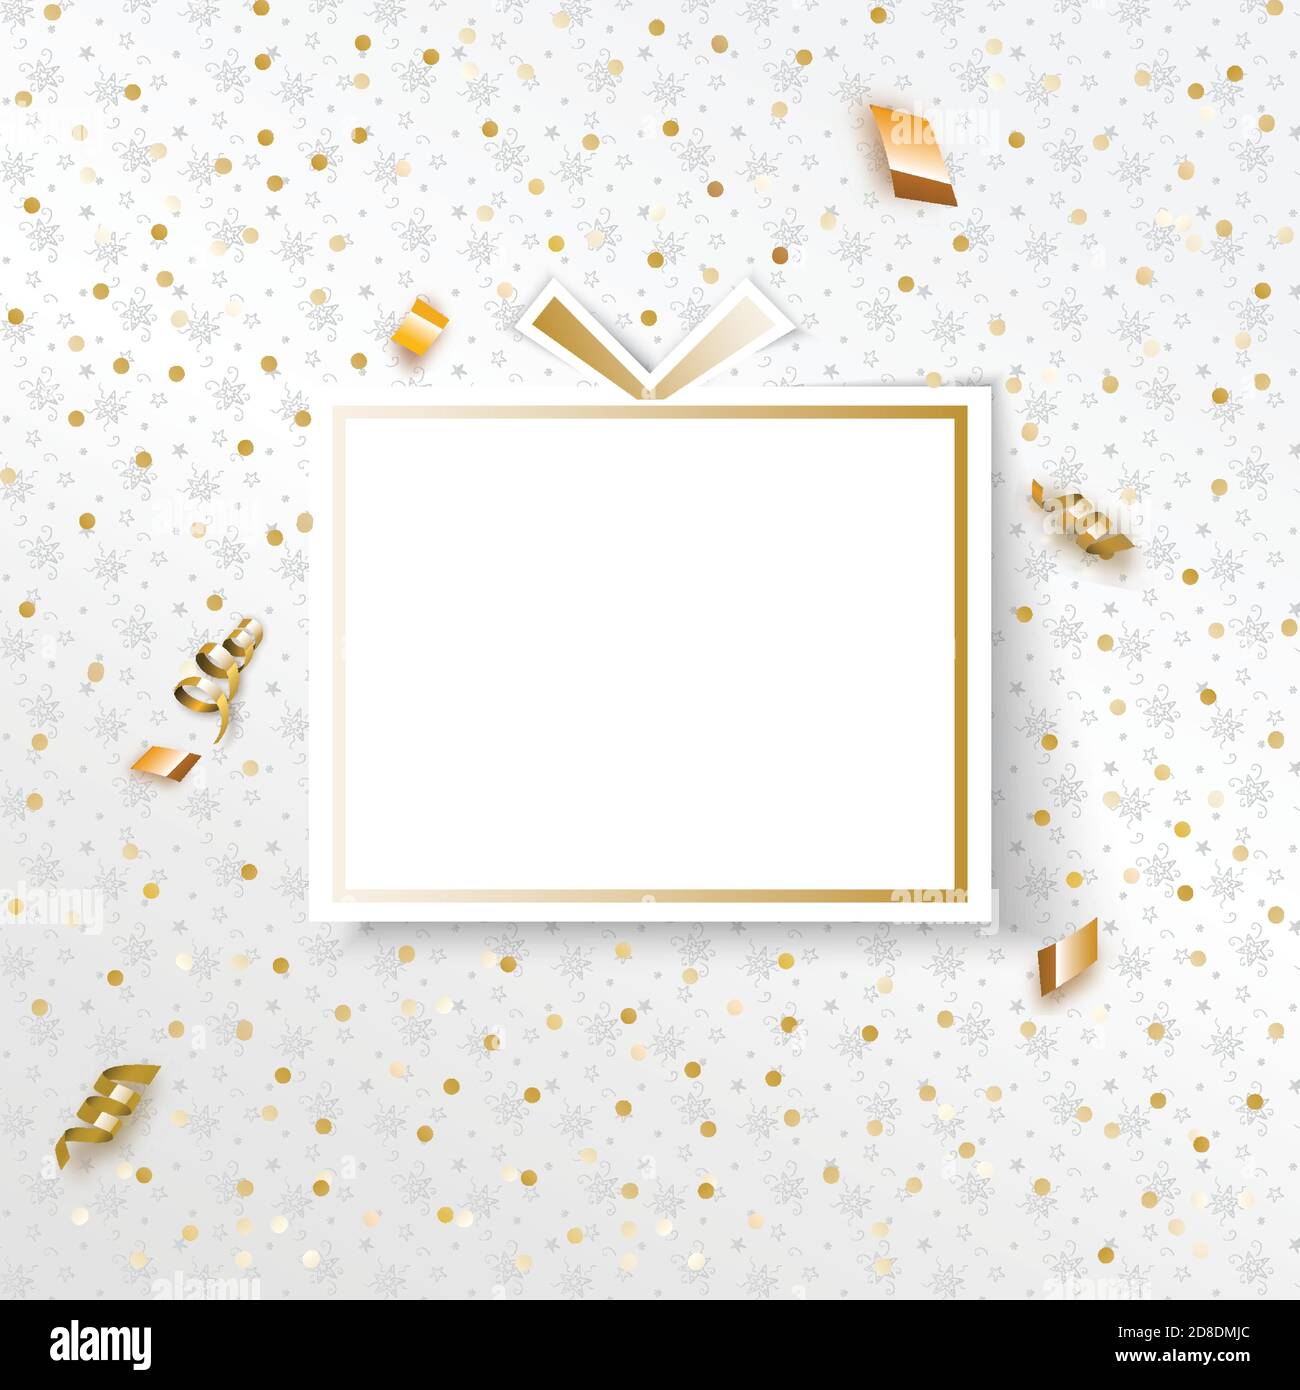 Weißes Weihnachtsgeschenk mit goldenen Serpentin und Konfetti, Minimalismus Grußkarte Stock Vektor